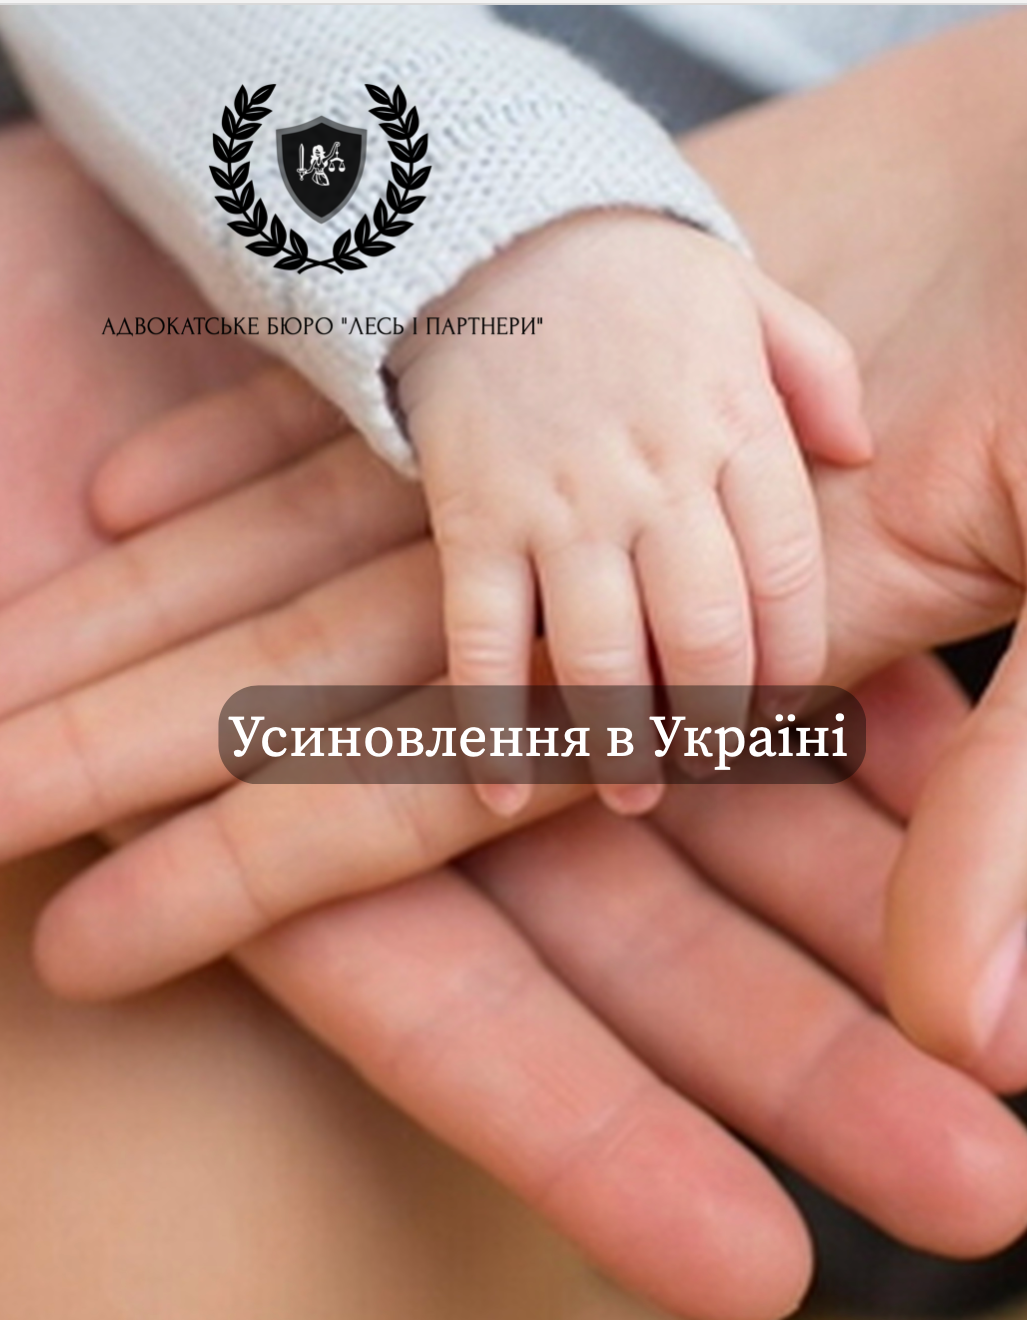 Усиновлення в Україні